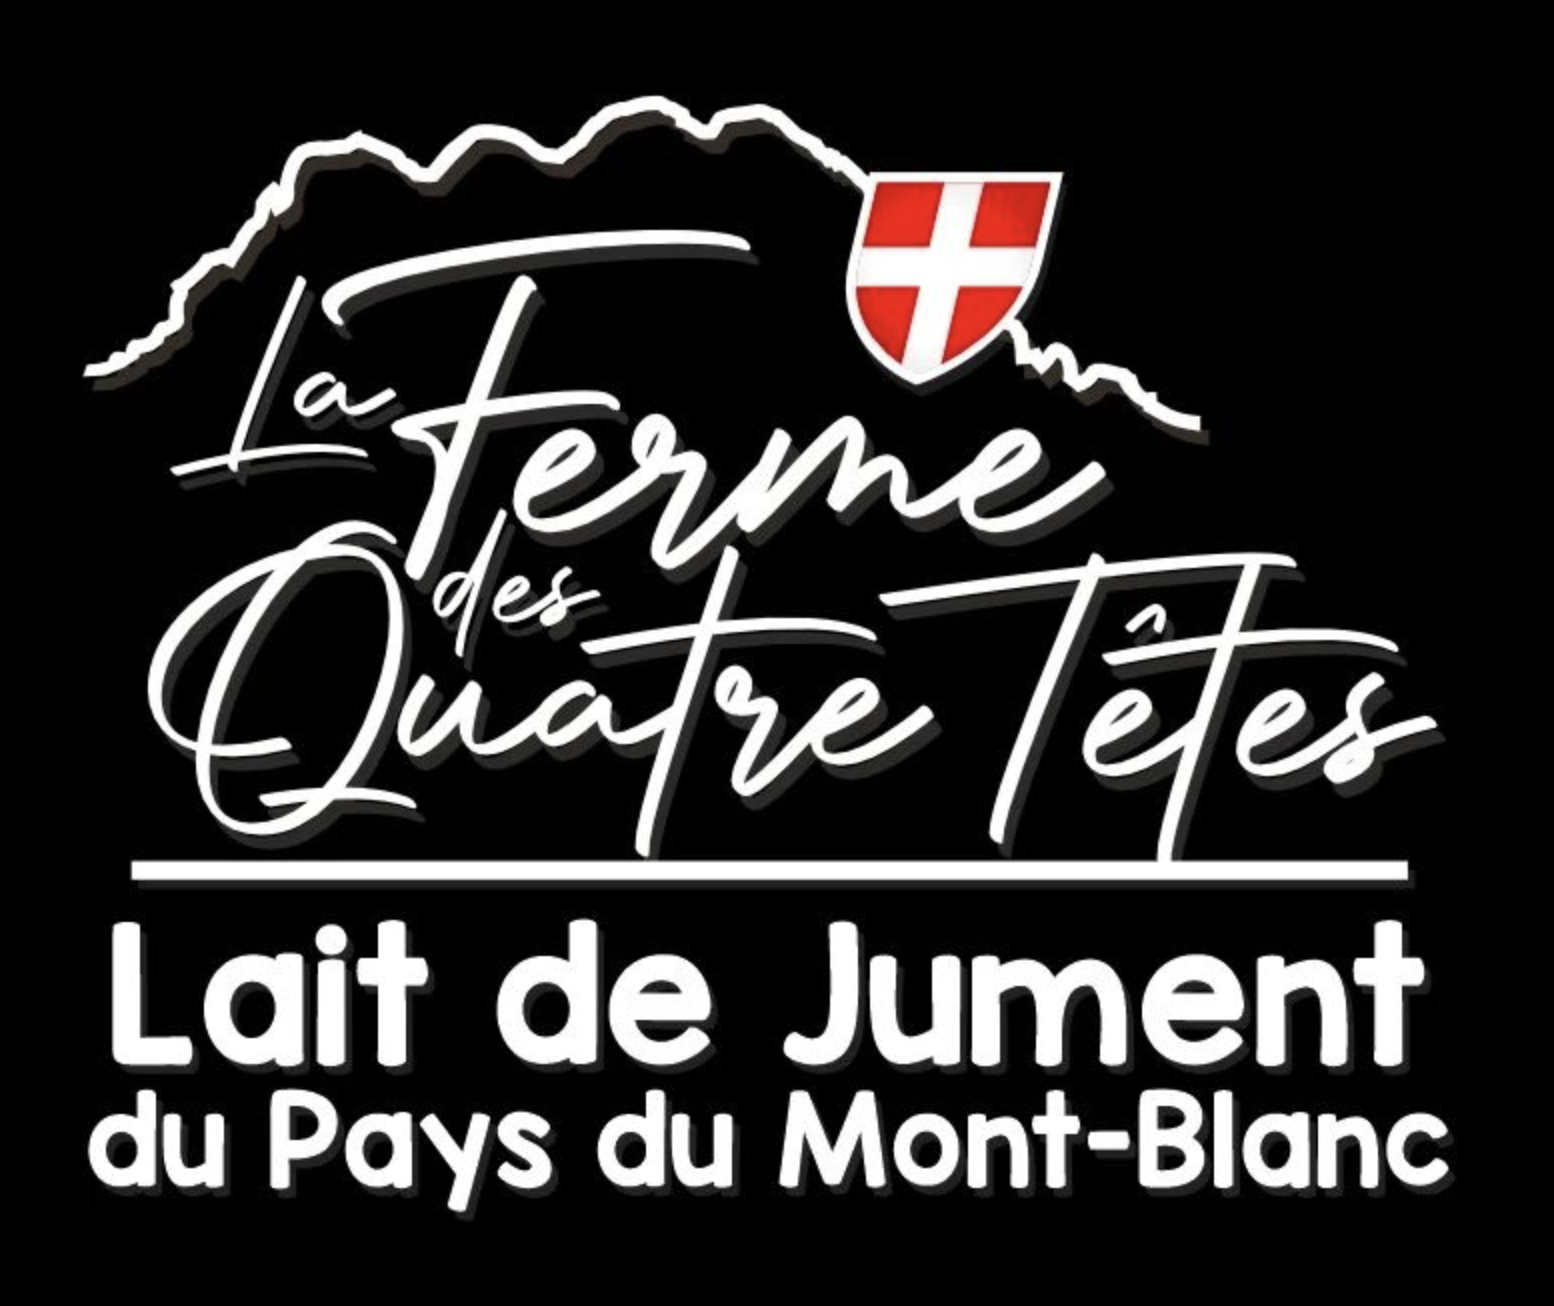 Les professionnels de Contat' Mont-Blanc: La Ferme des Quatre Têtes - <br> Lait de Jument du Pays du Mont-Blanc